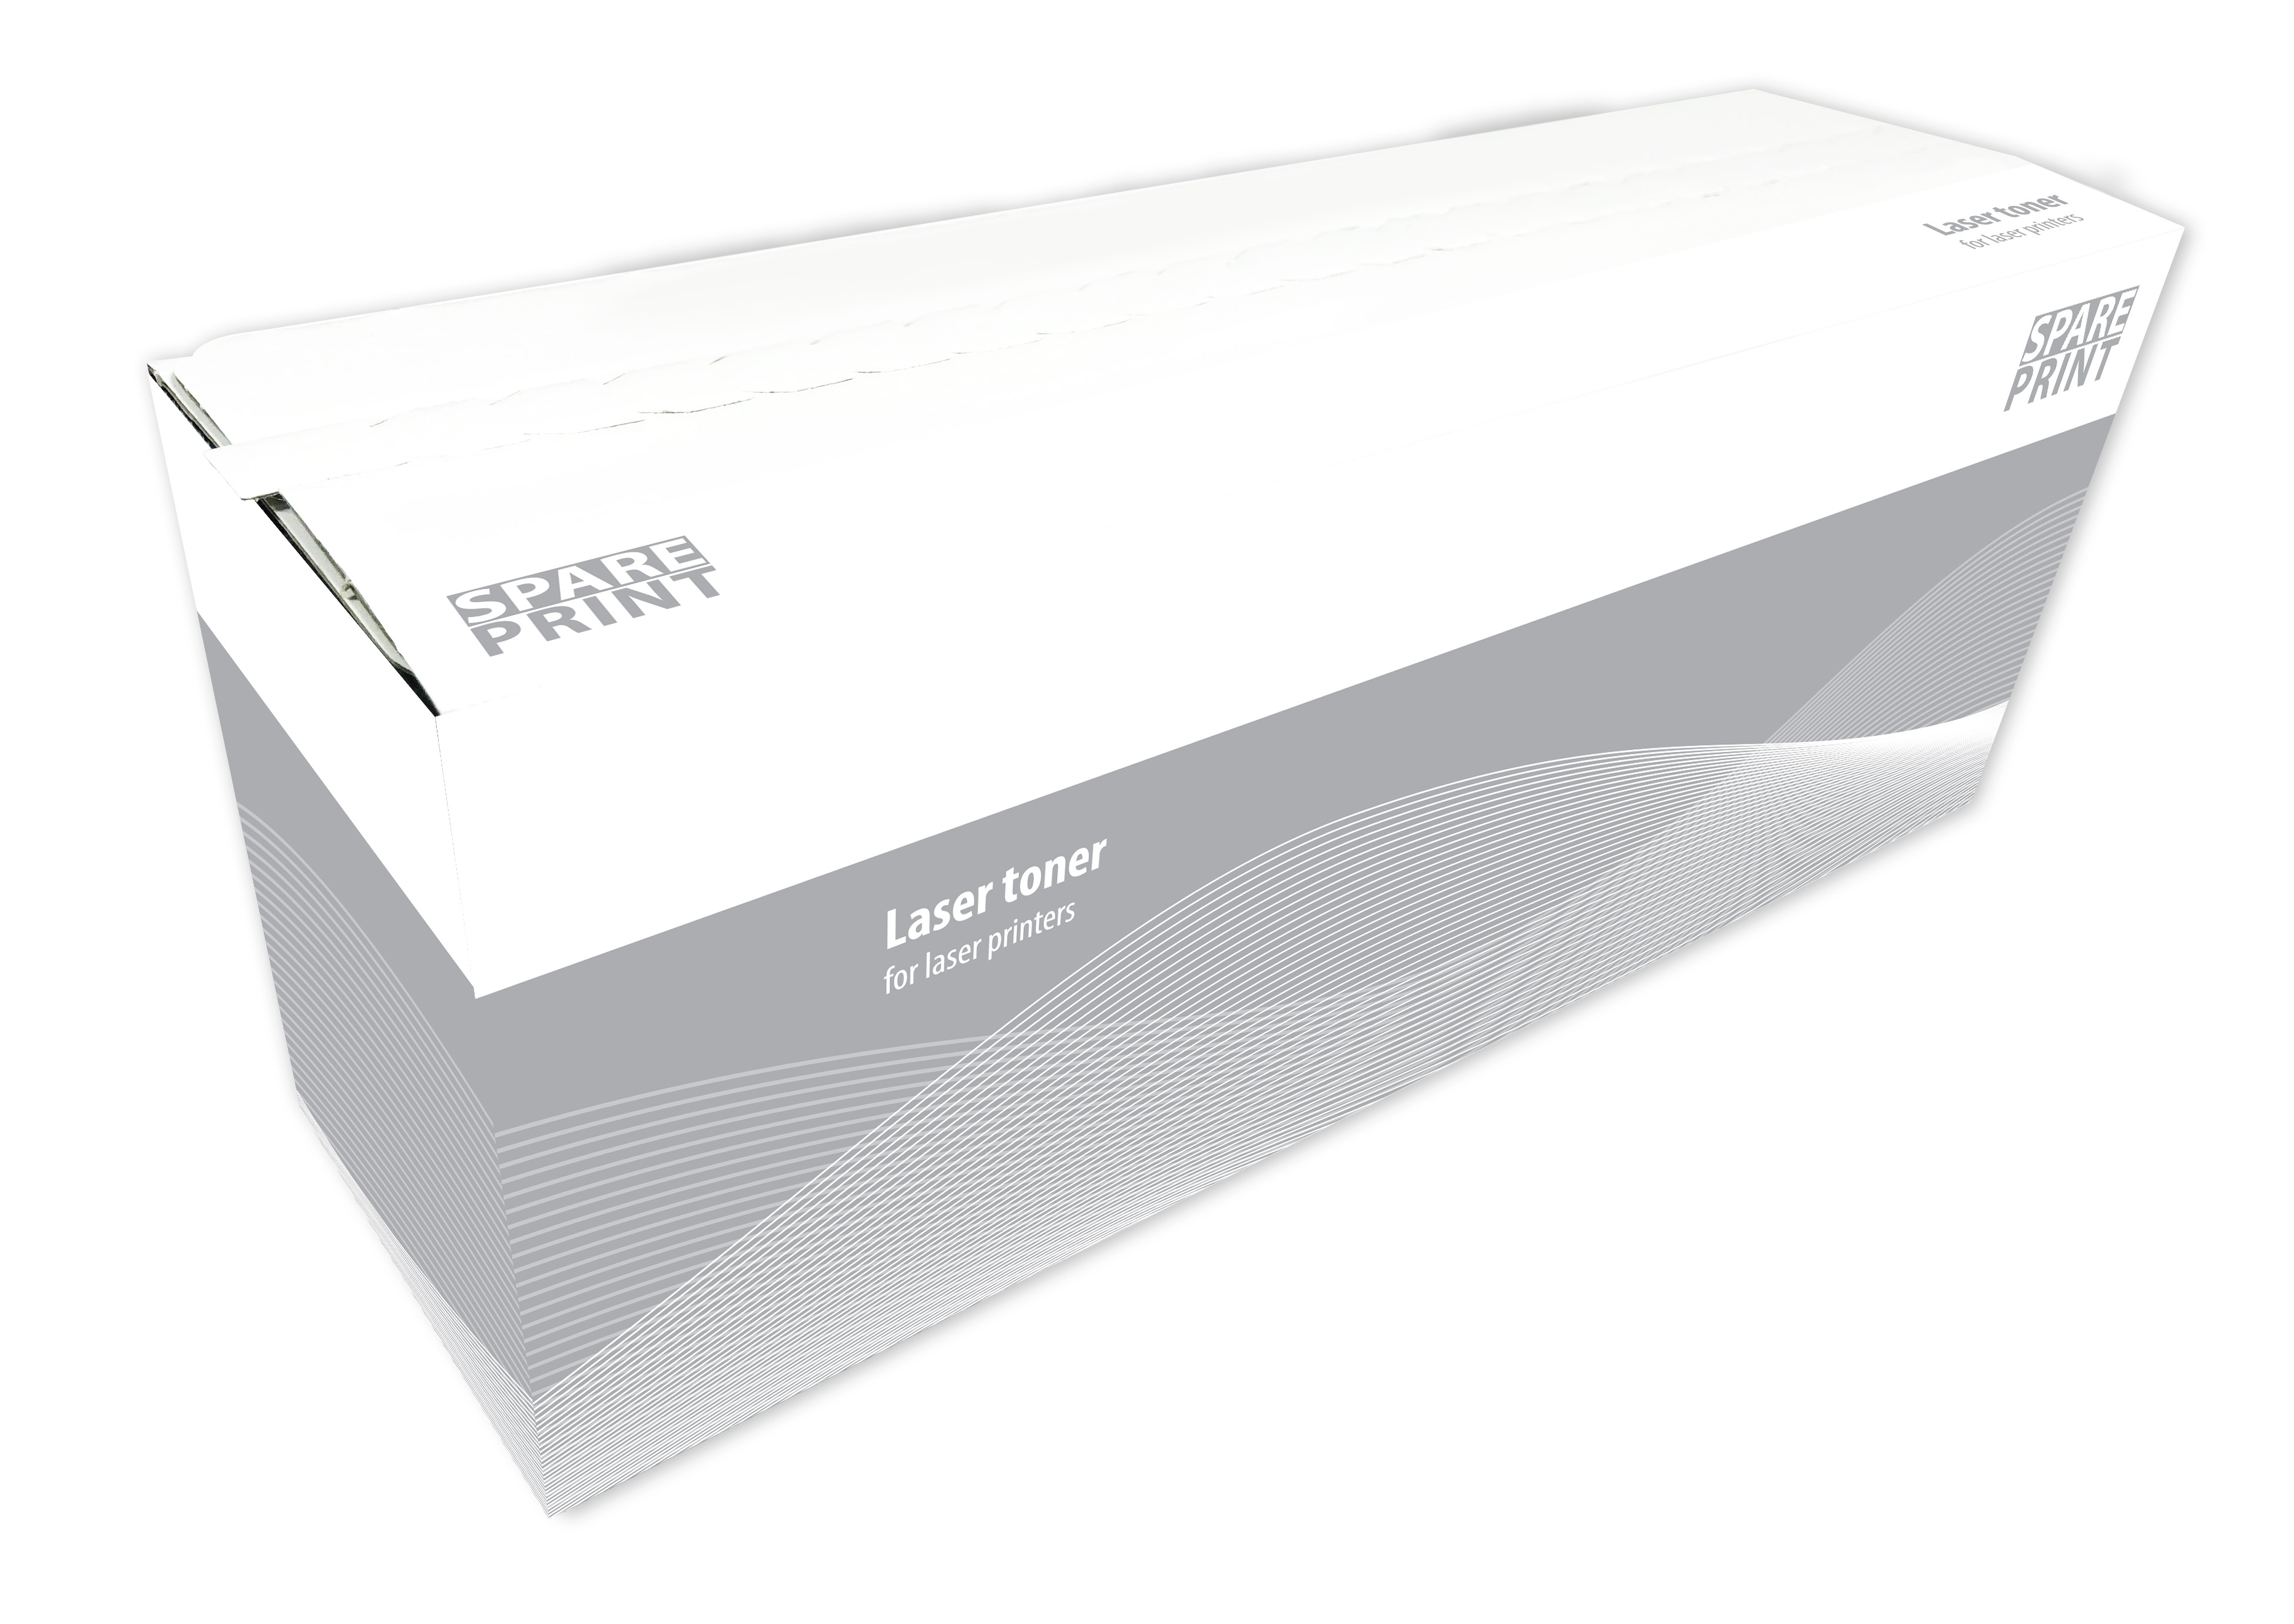 SPARE PRINT kompatibilní toner CF289X č. 89X Black pro tiskárny HP